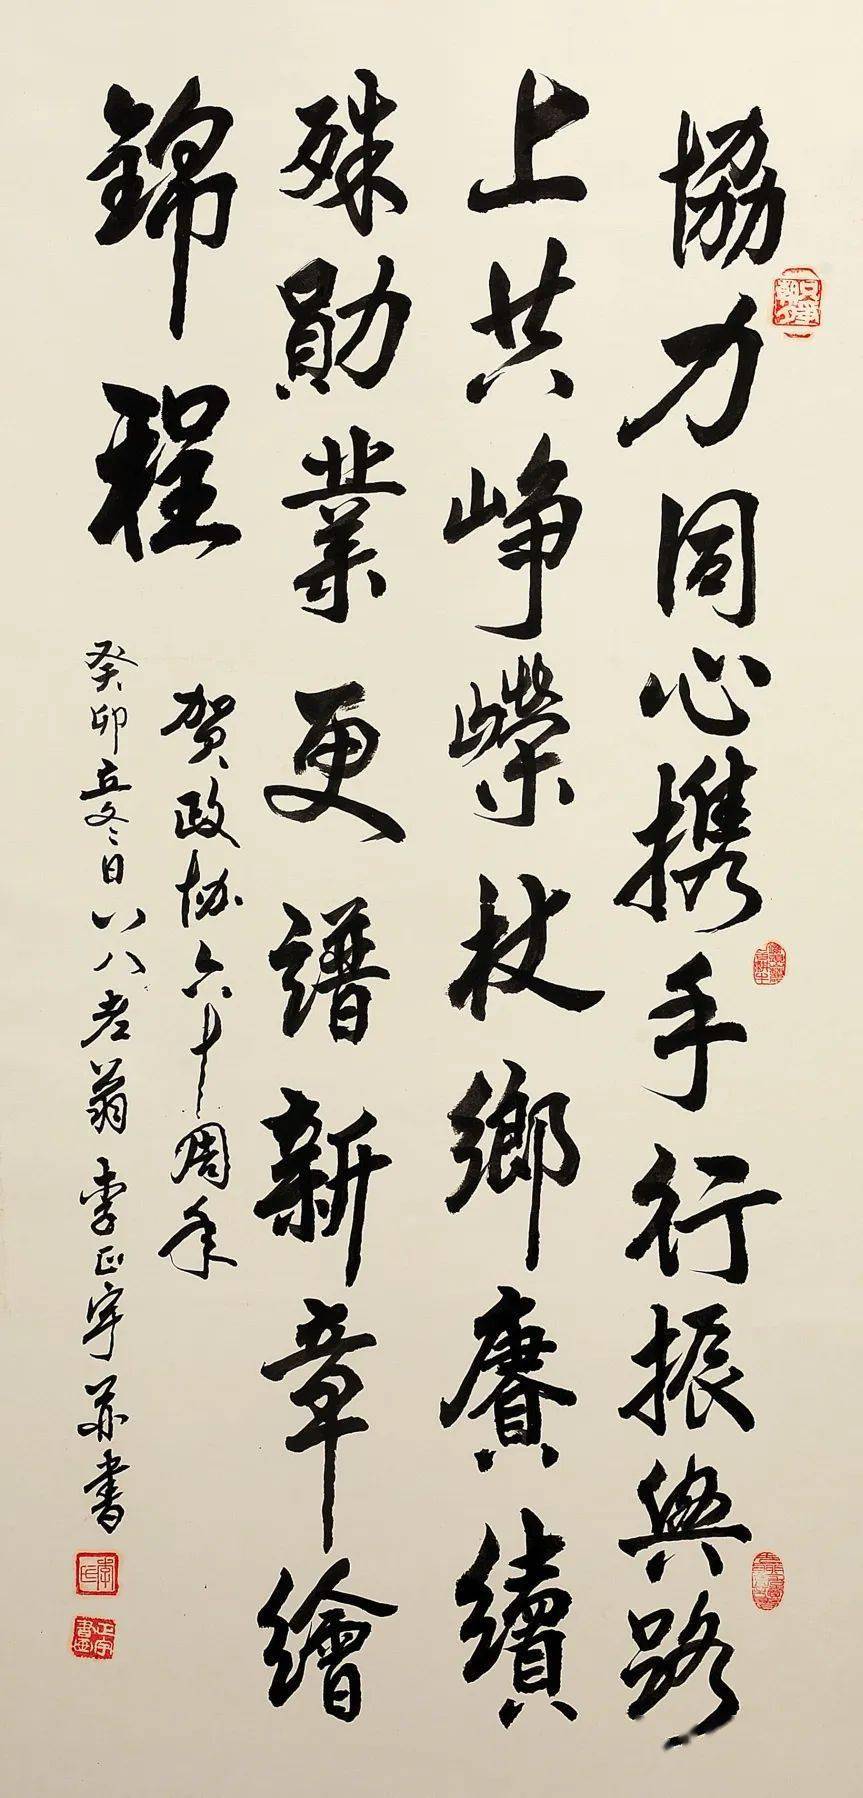 新征程——楚雄州政协成立60周年诗词书画摄影展(三)